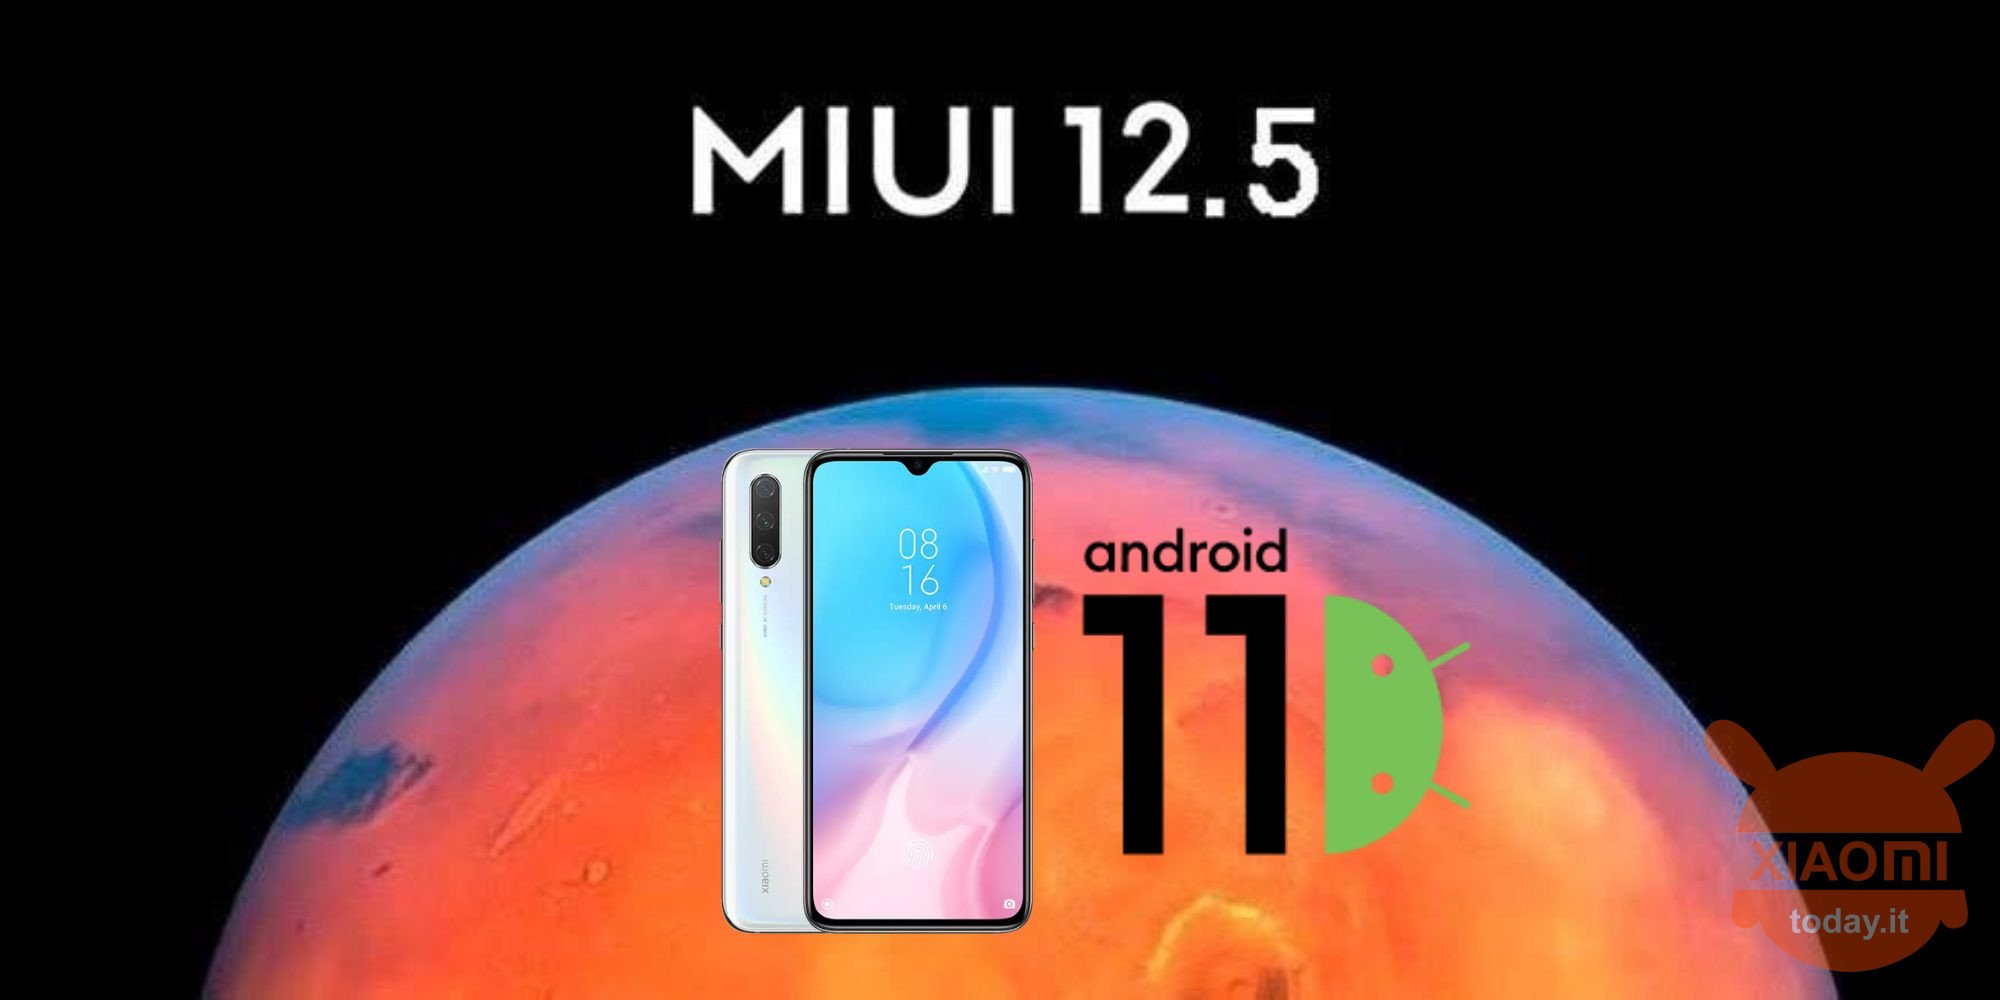 xiaomi mi 9 lite wird auf miui 12.5 und android 11 italien aktualisiert